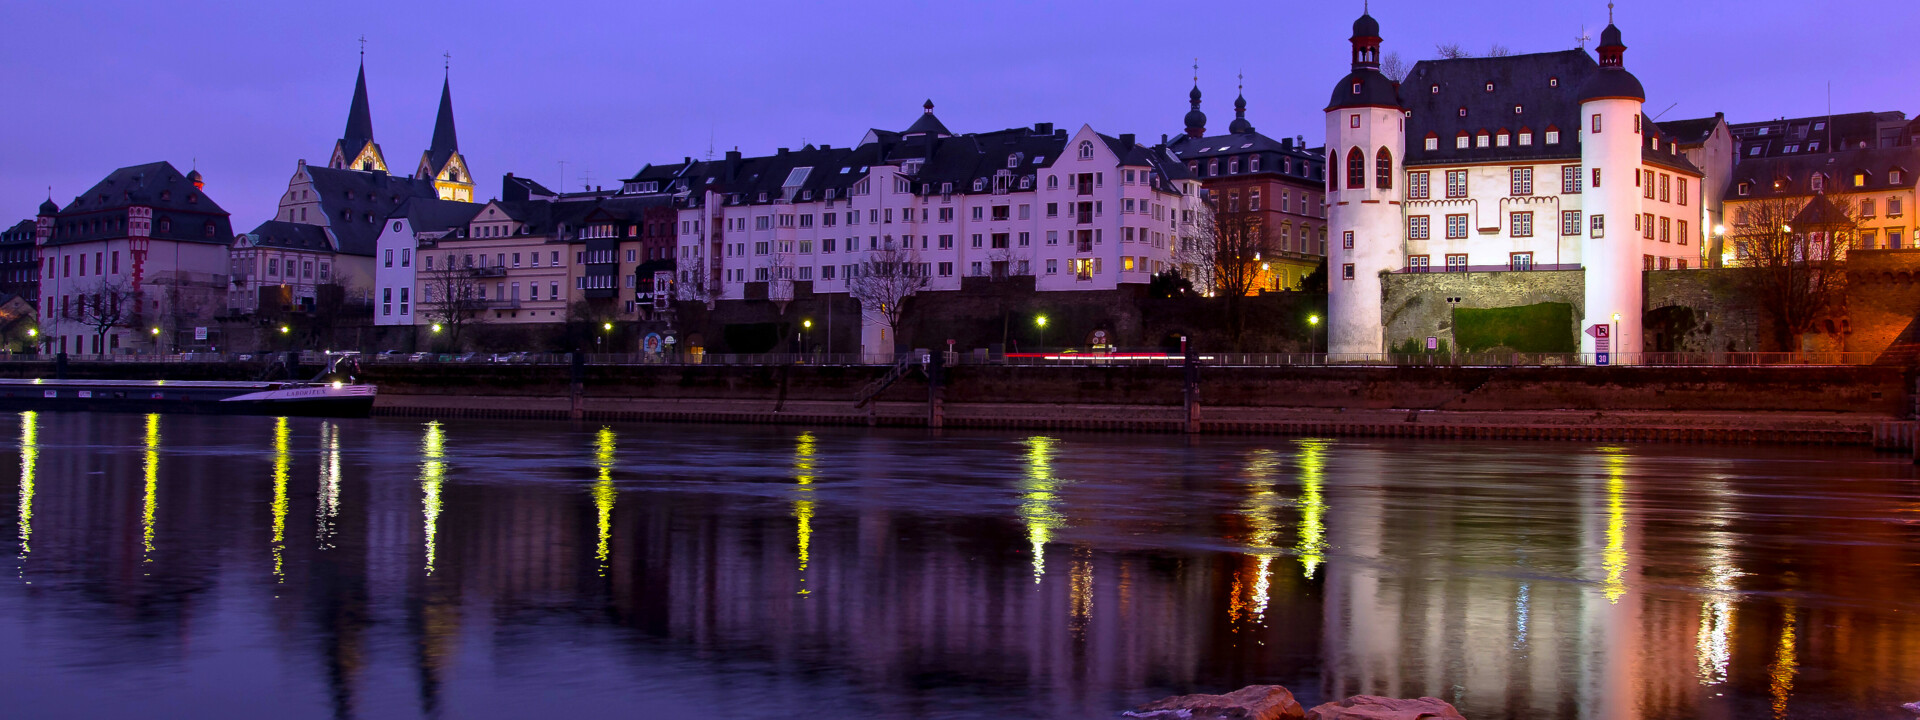 Abendfoto von der Alten Burg in Koblenz mit der Balduinbrücke und mit der Mosel im Vordergrund ©Koblenz-Touristik GmbH, Christian Nentwig